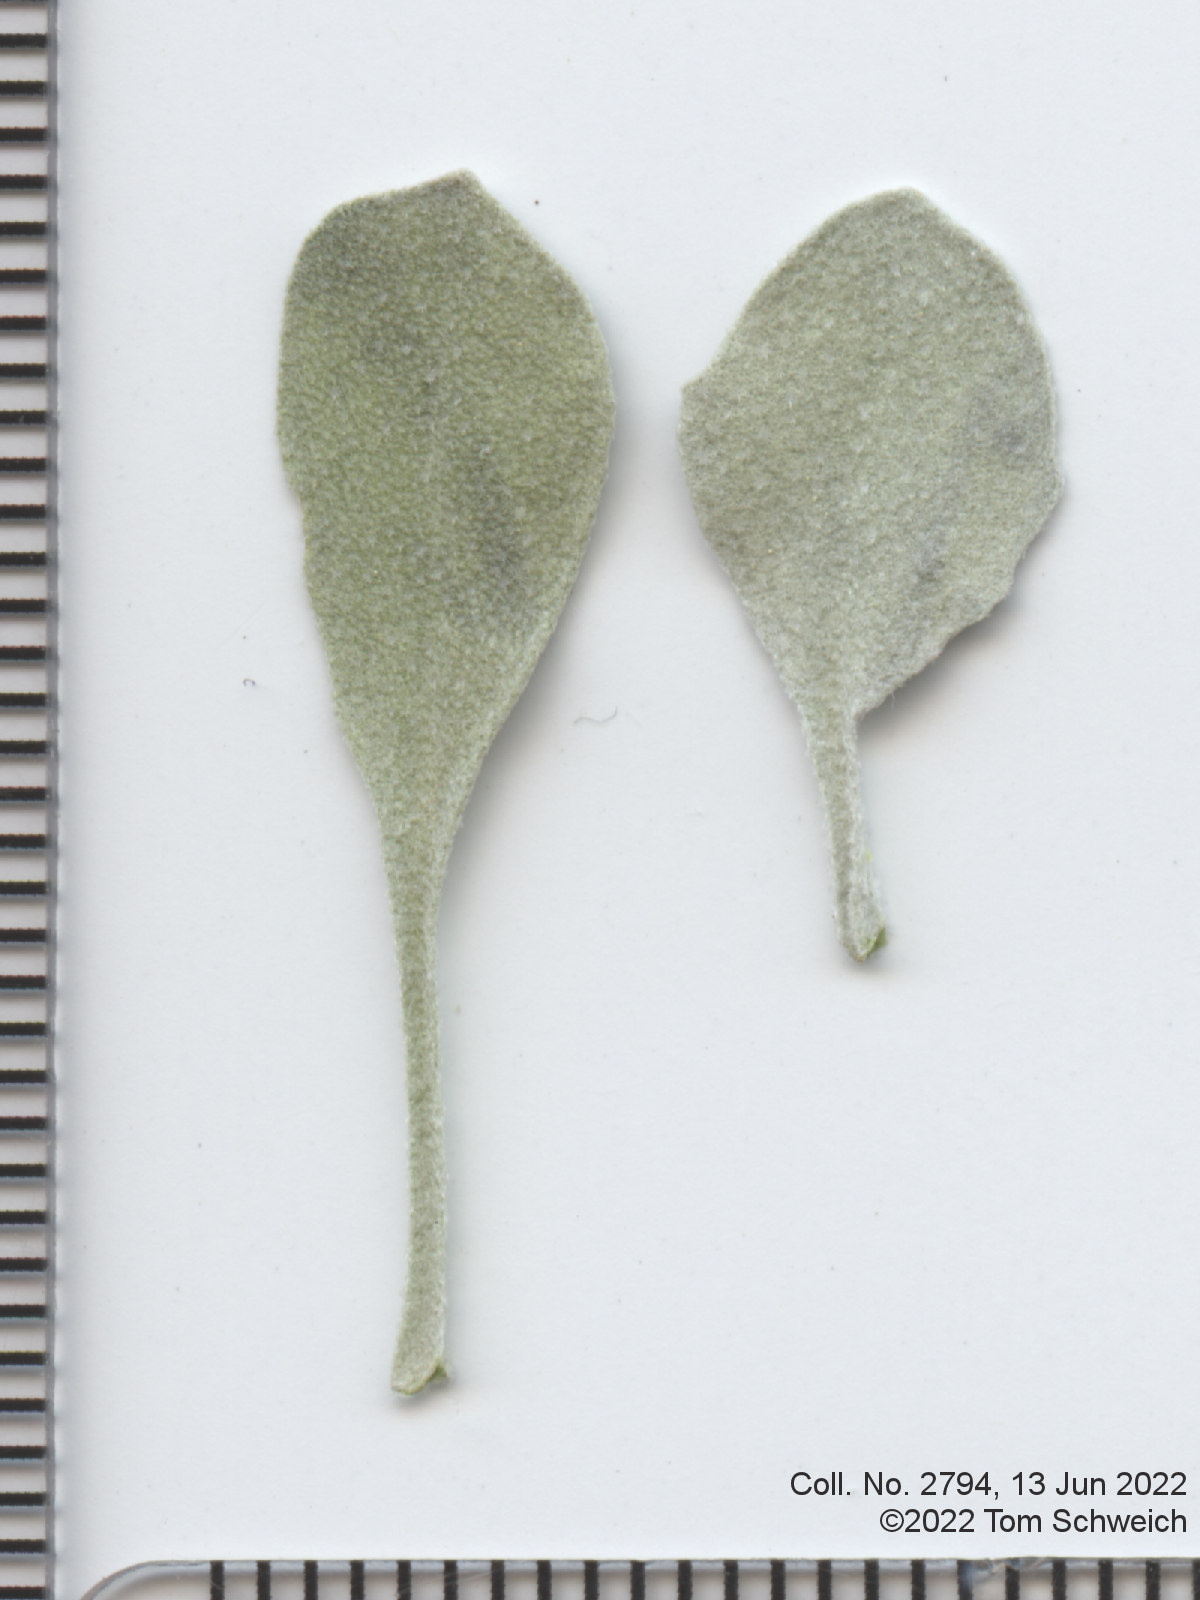 Brassicaceae Physaria vitulifera